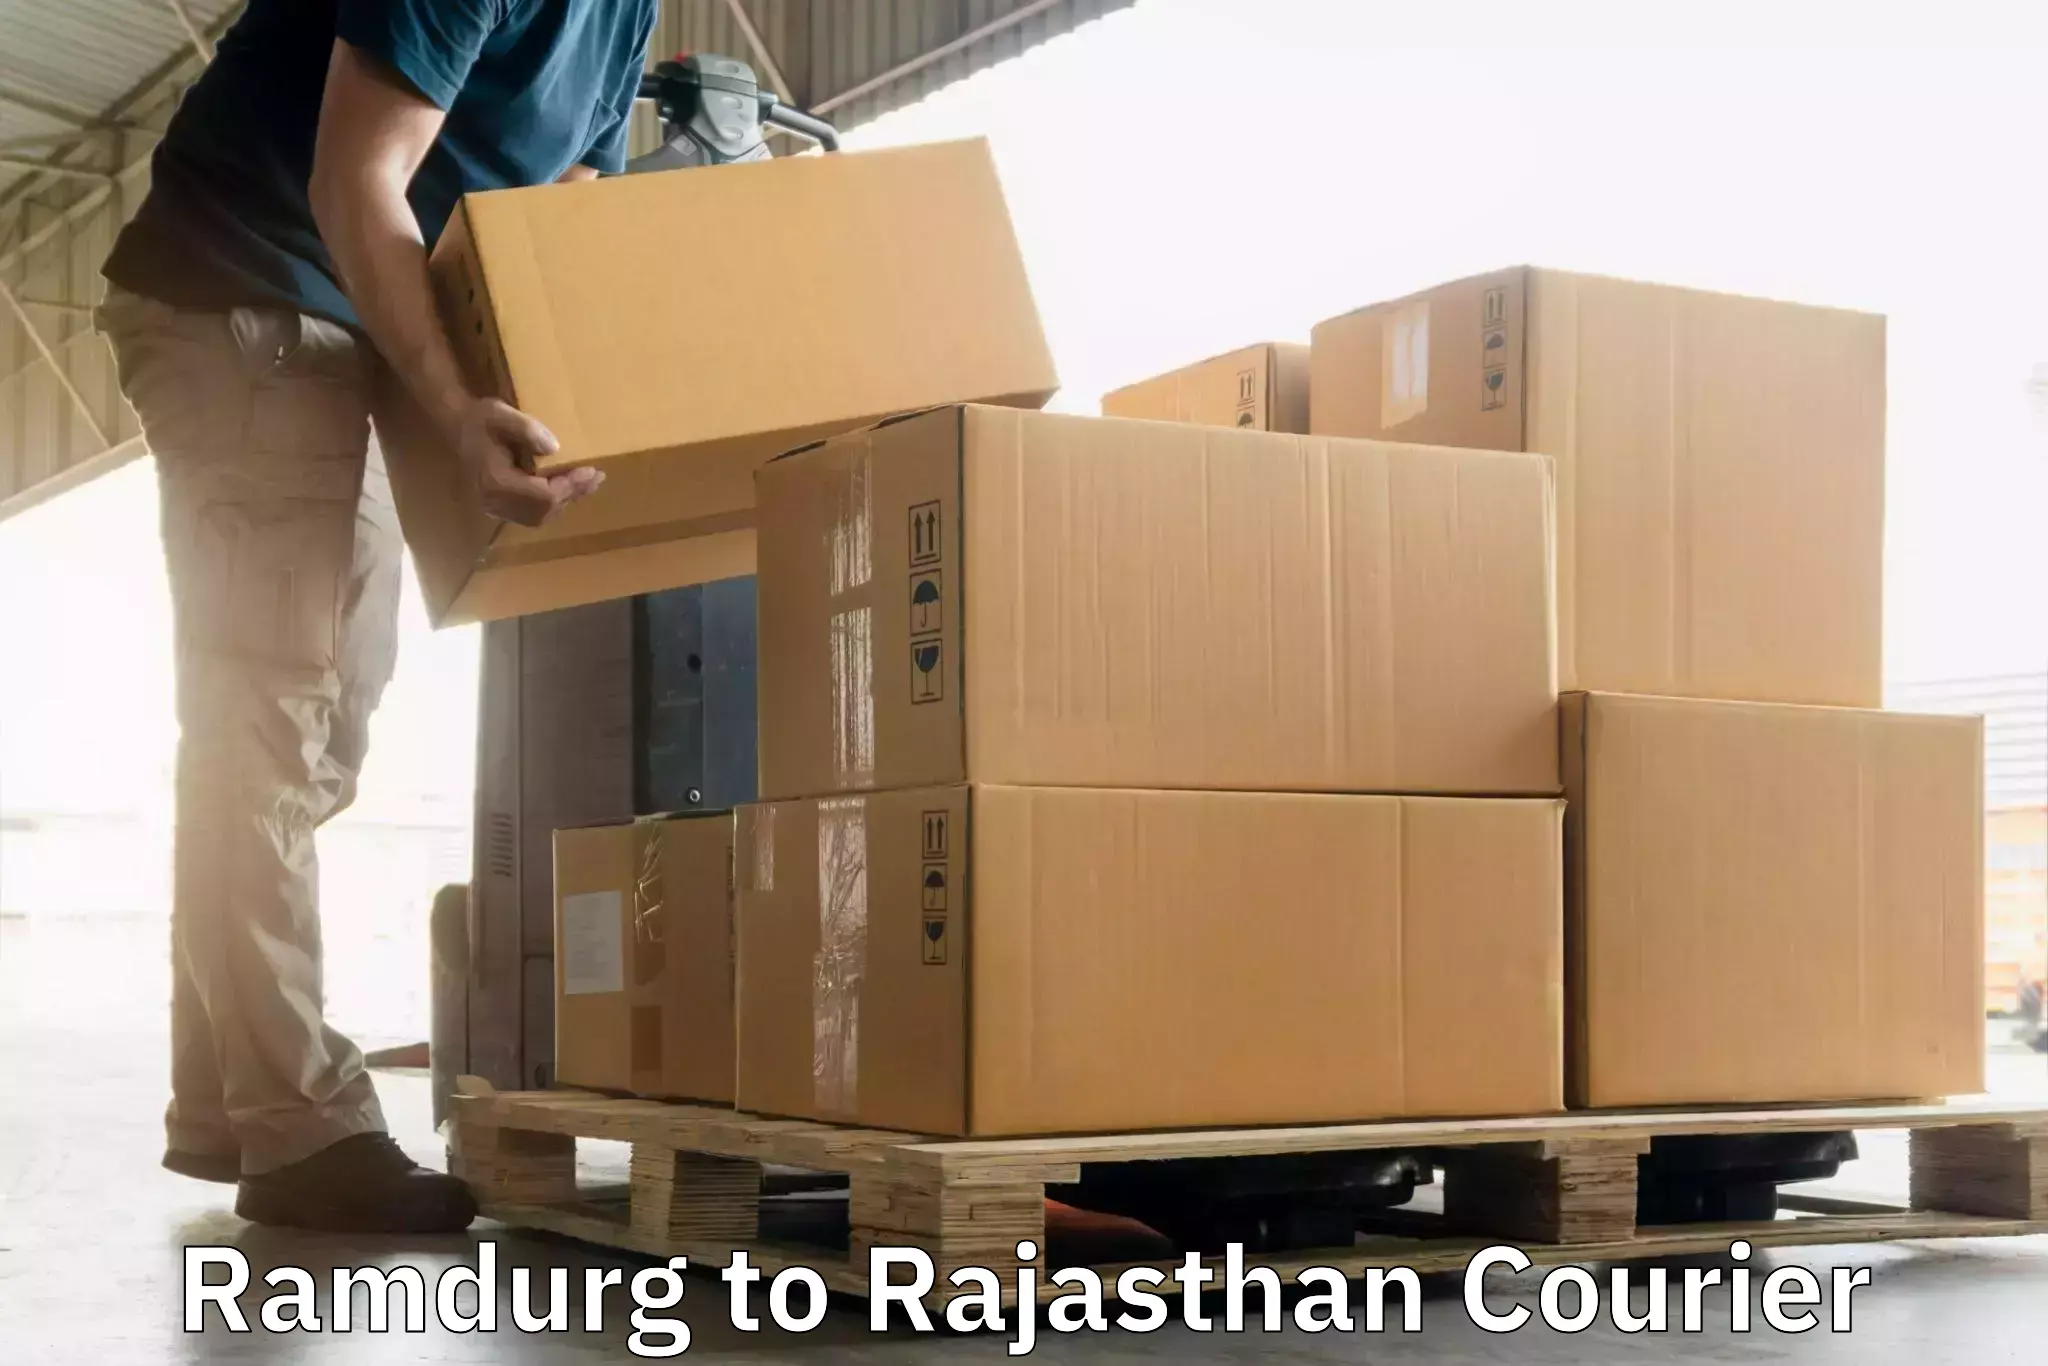 Multi-carrier shipping Ramdurg to Chittorgarh